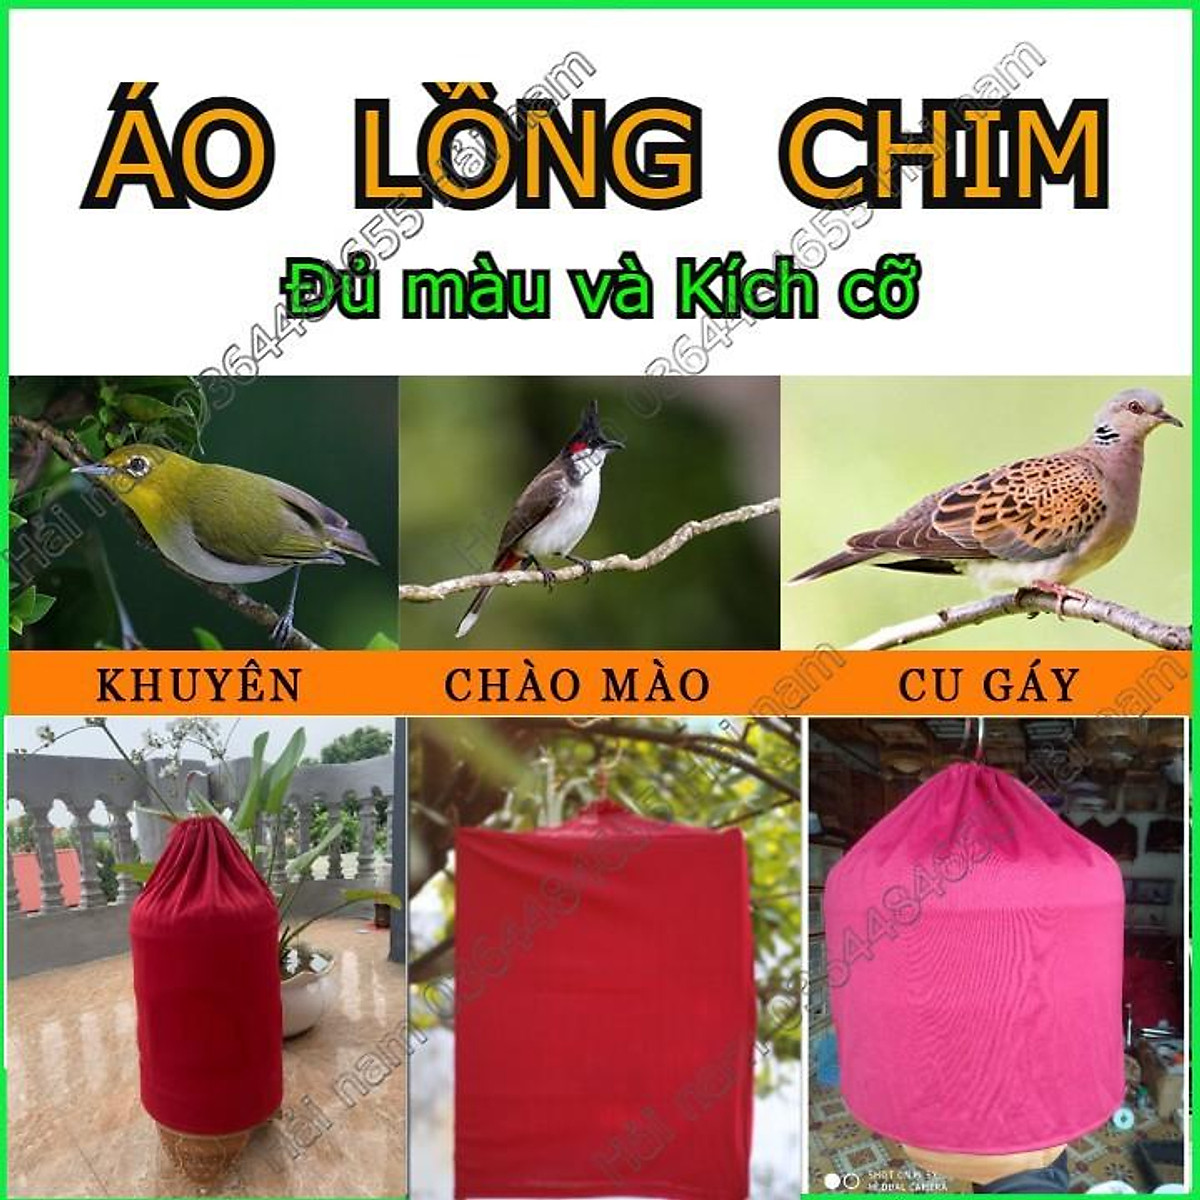 Kỹ thuật nuôi và cách chăm sóc chim Chào mào hót hay như ý muốn – Chim Cảnh  Việt